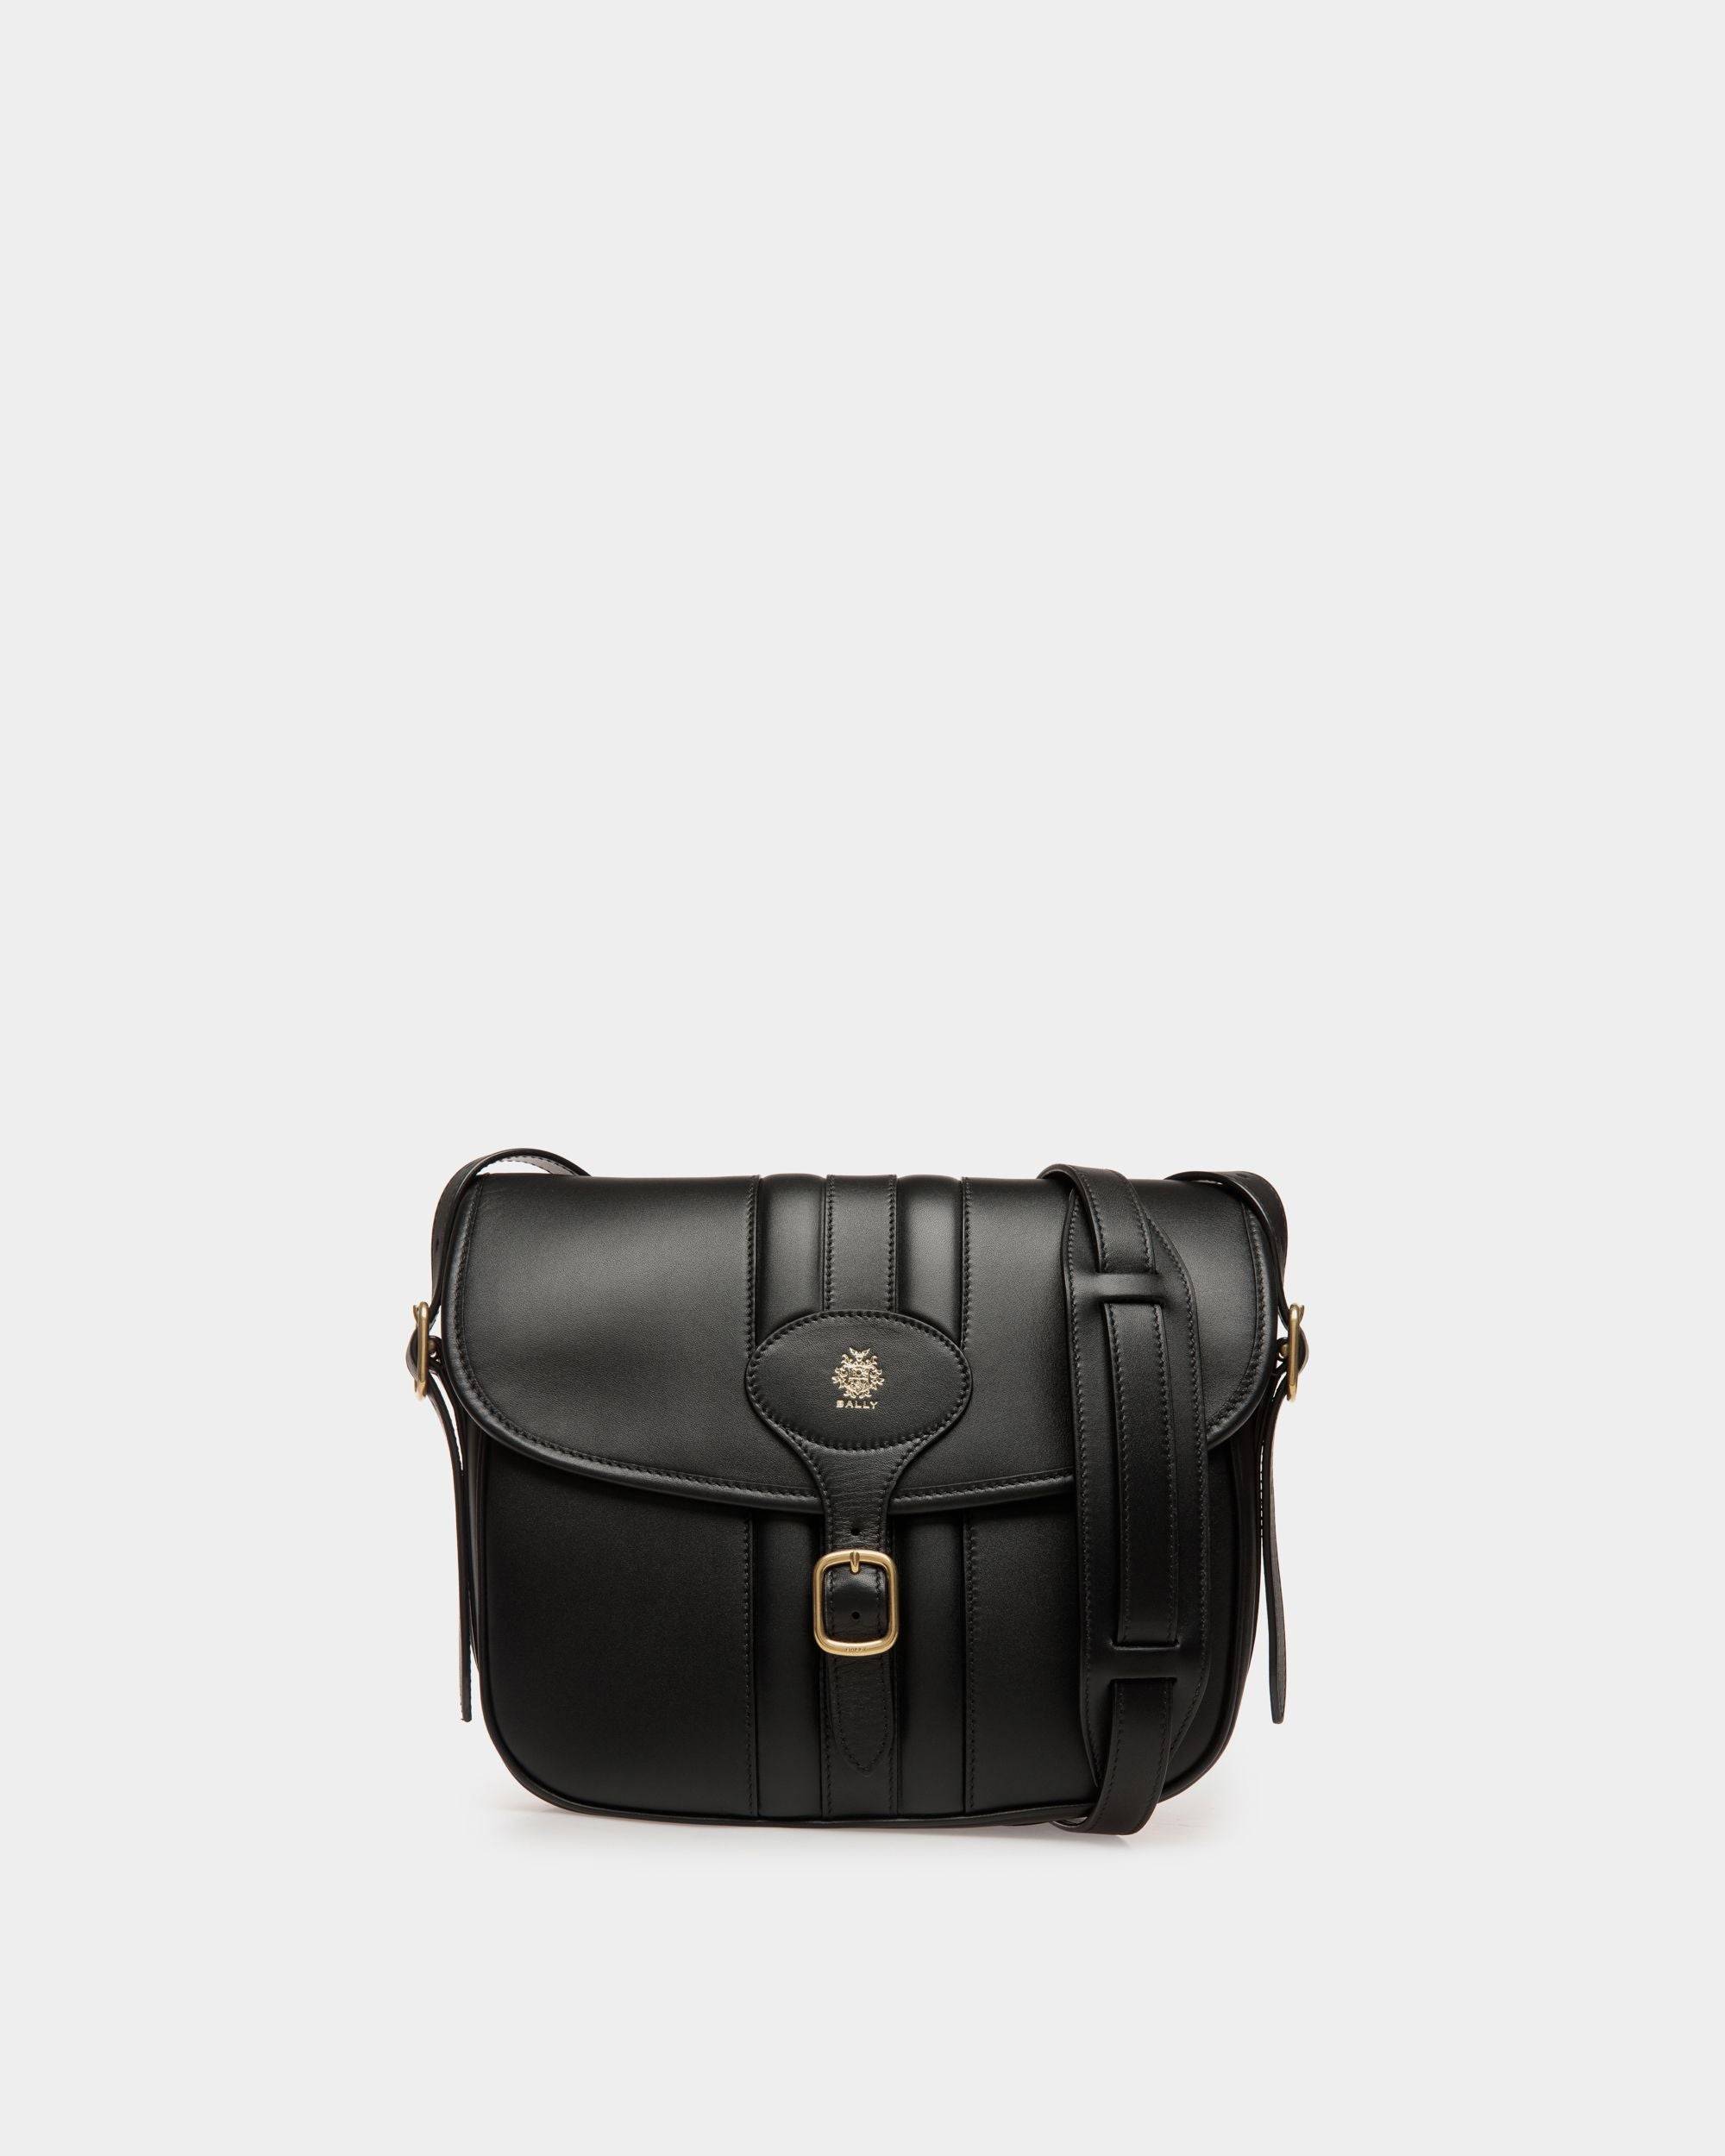 Beckett | Men's Crossbody Bag in Black Leather | Bally | Still Life Front